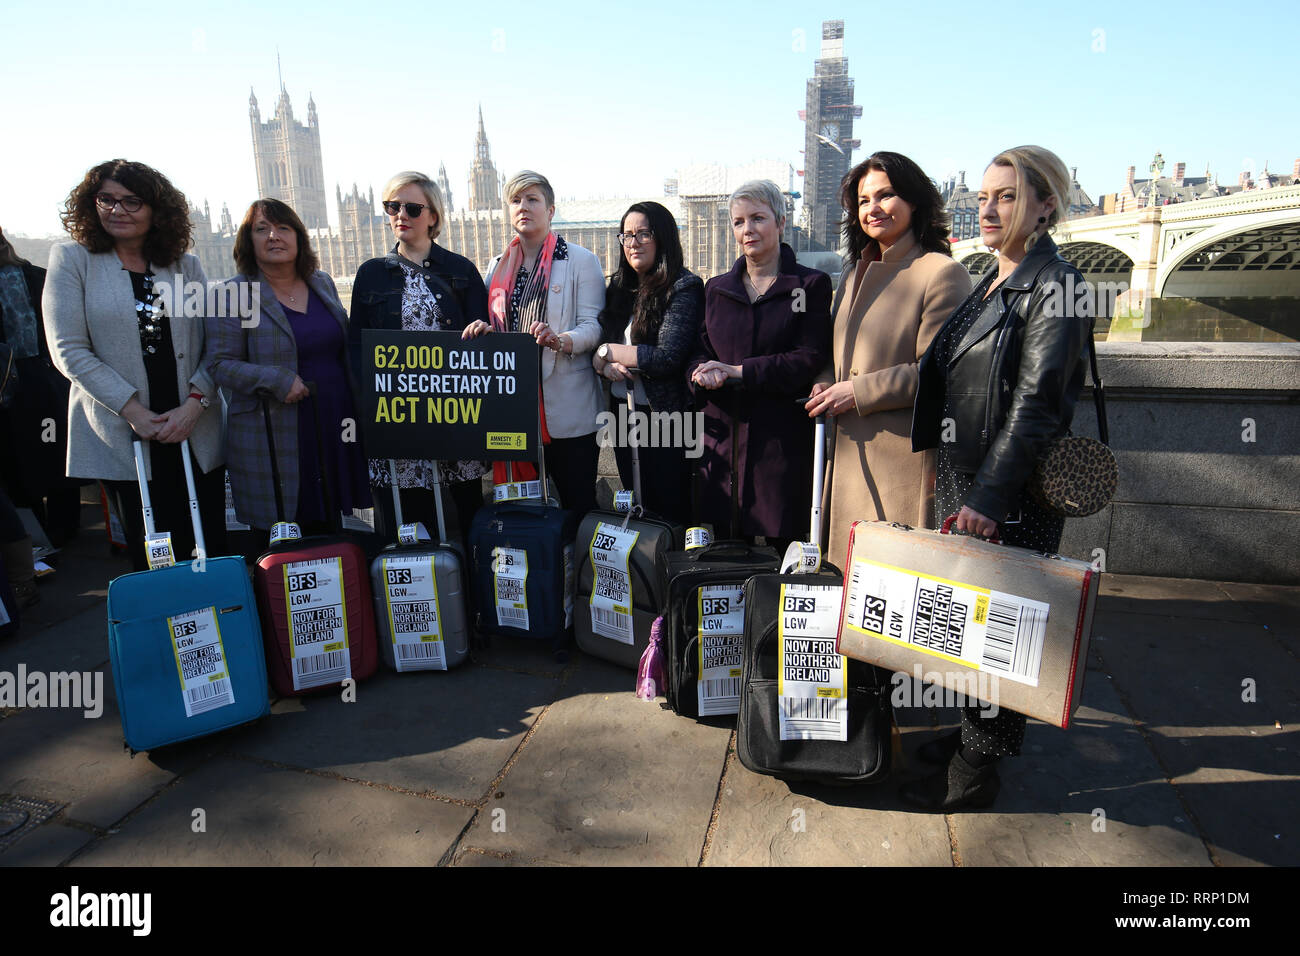 Heidi Allen (segundo a la derecha) se une a las mujeres afectadas por Irlanda del Norte las estrictas leyes sobre el aborto que llevan maletas, simbolizando las mujeres que viajan desde Irlanda del Norte a Gran Bretaña para terminaciones, cruzando el puente de Westminster exigiendo cambios legislativos. Foto de stock